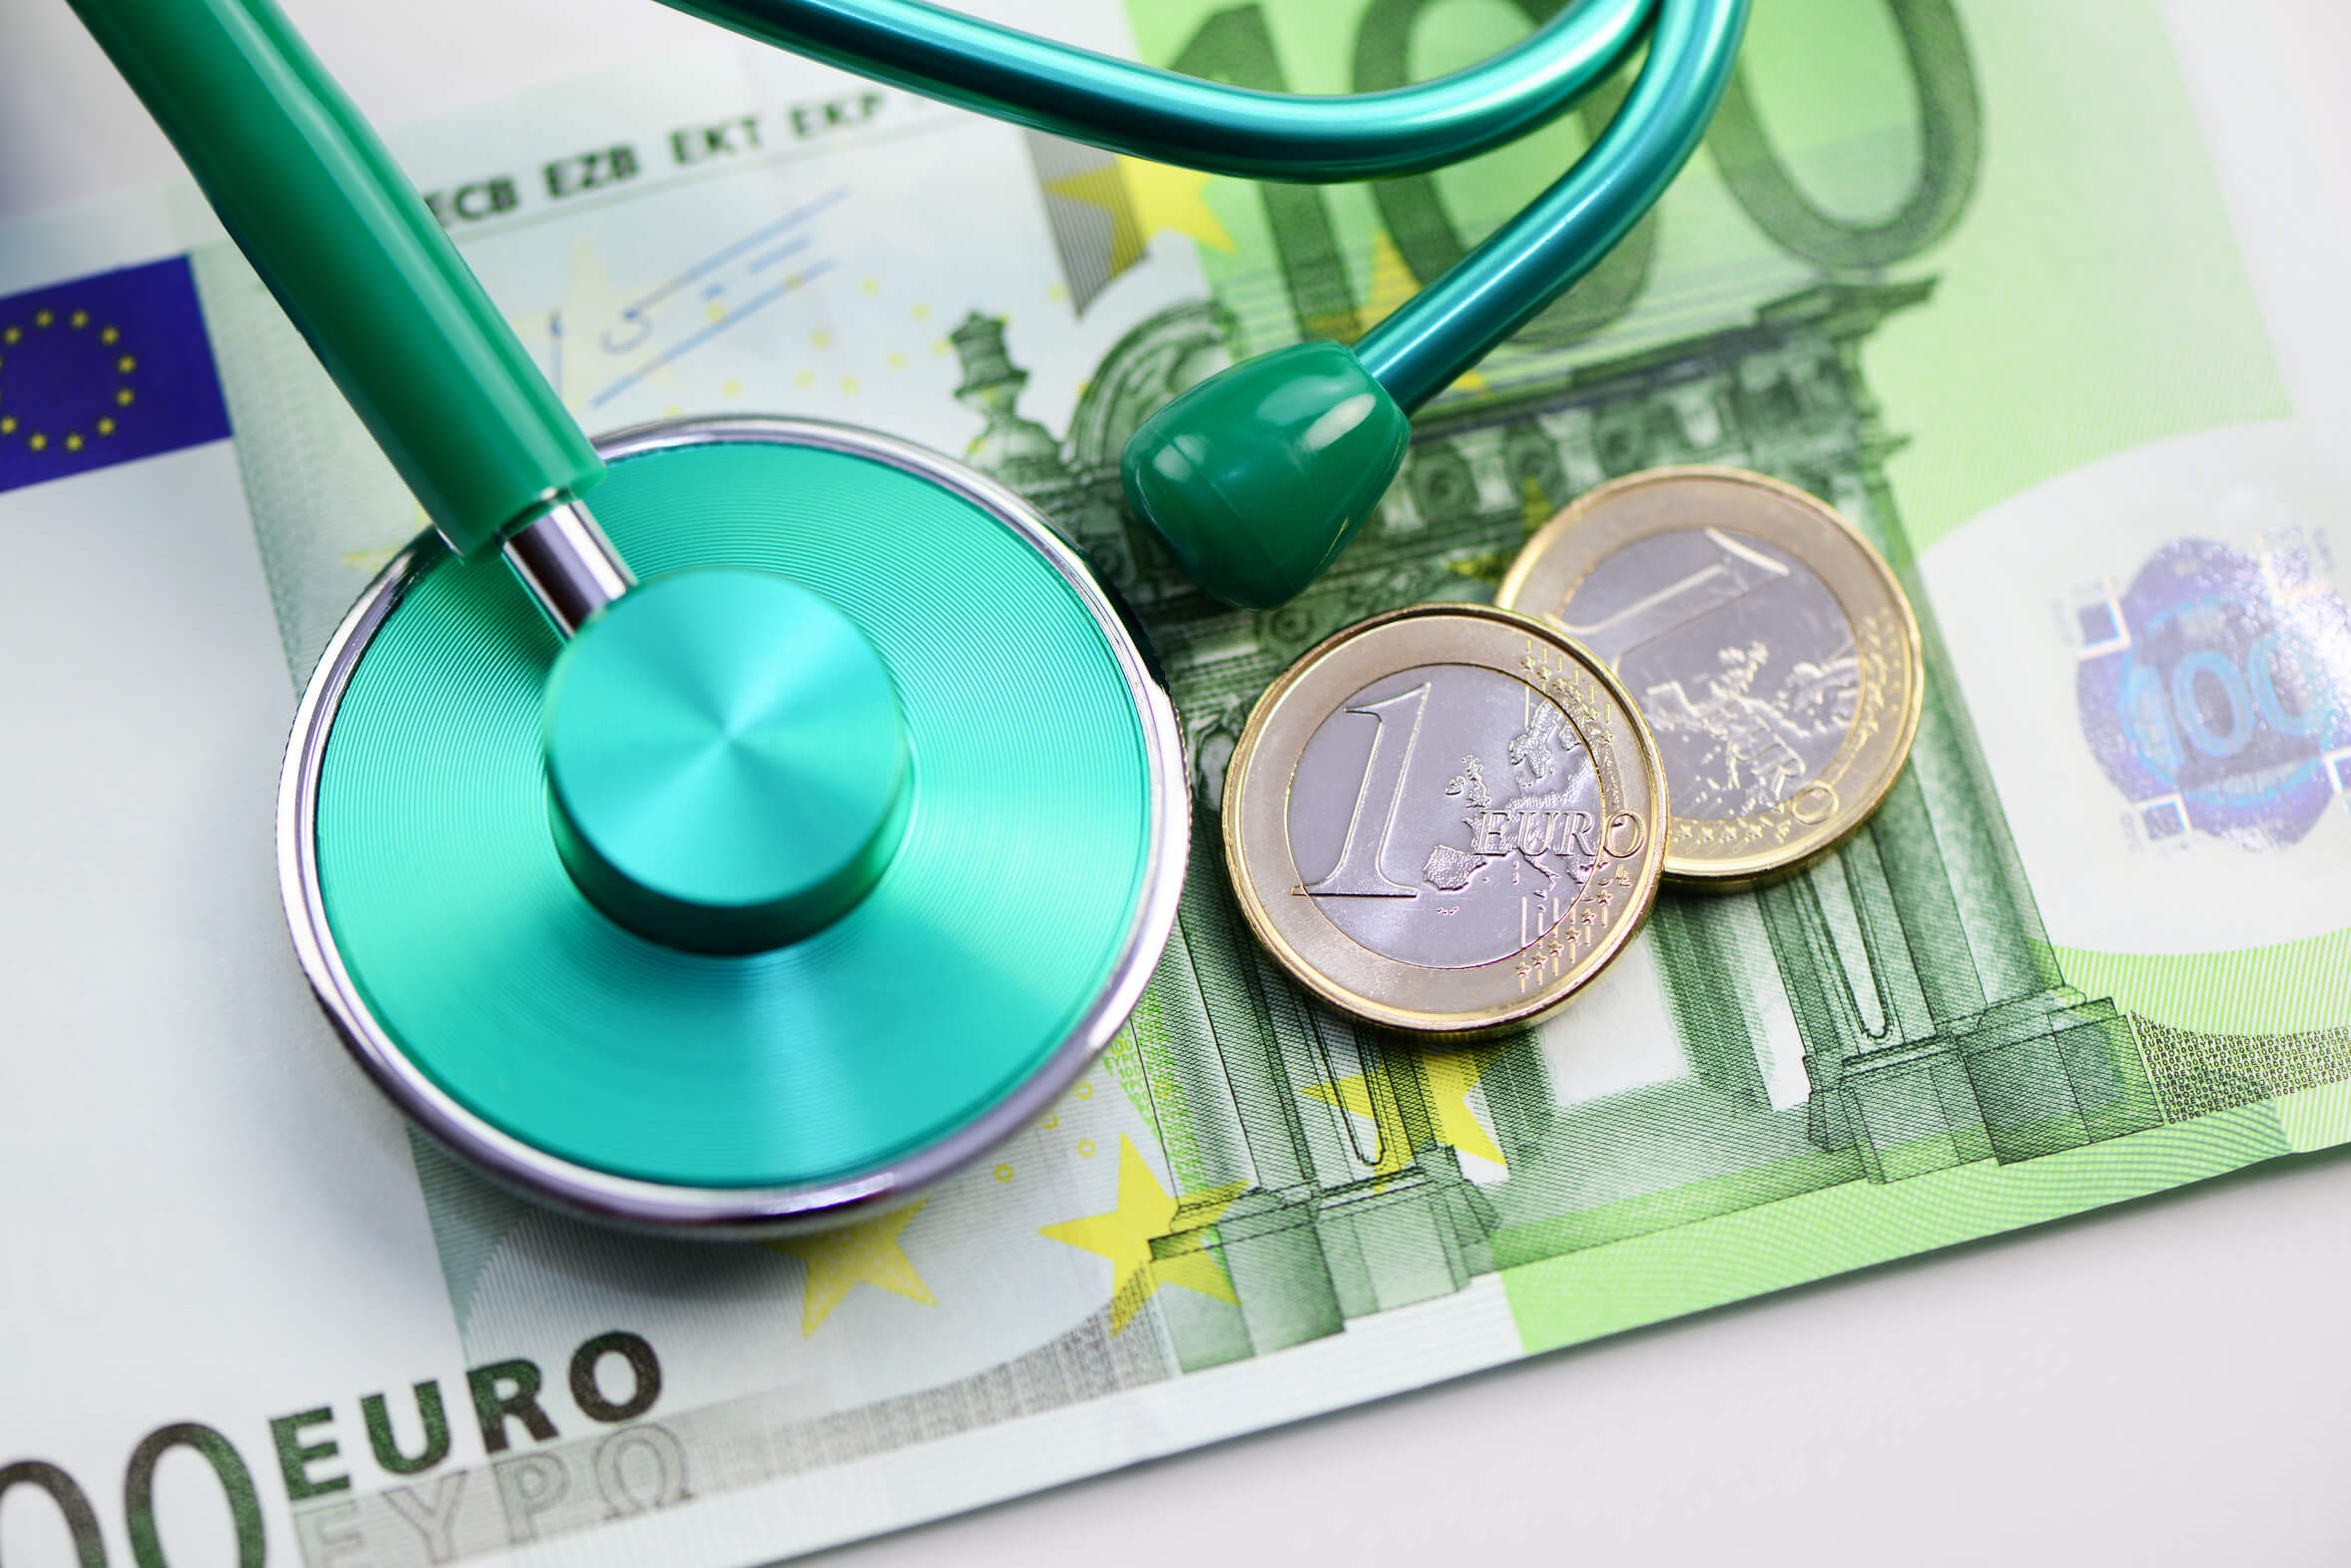 Grünes Stethoskop auf einem hunderd Euro Schein